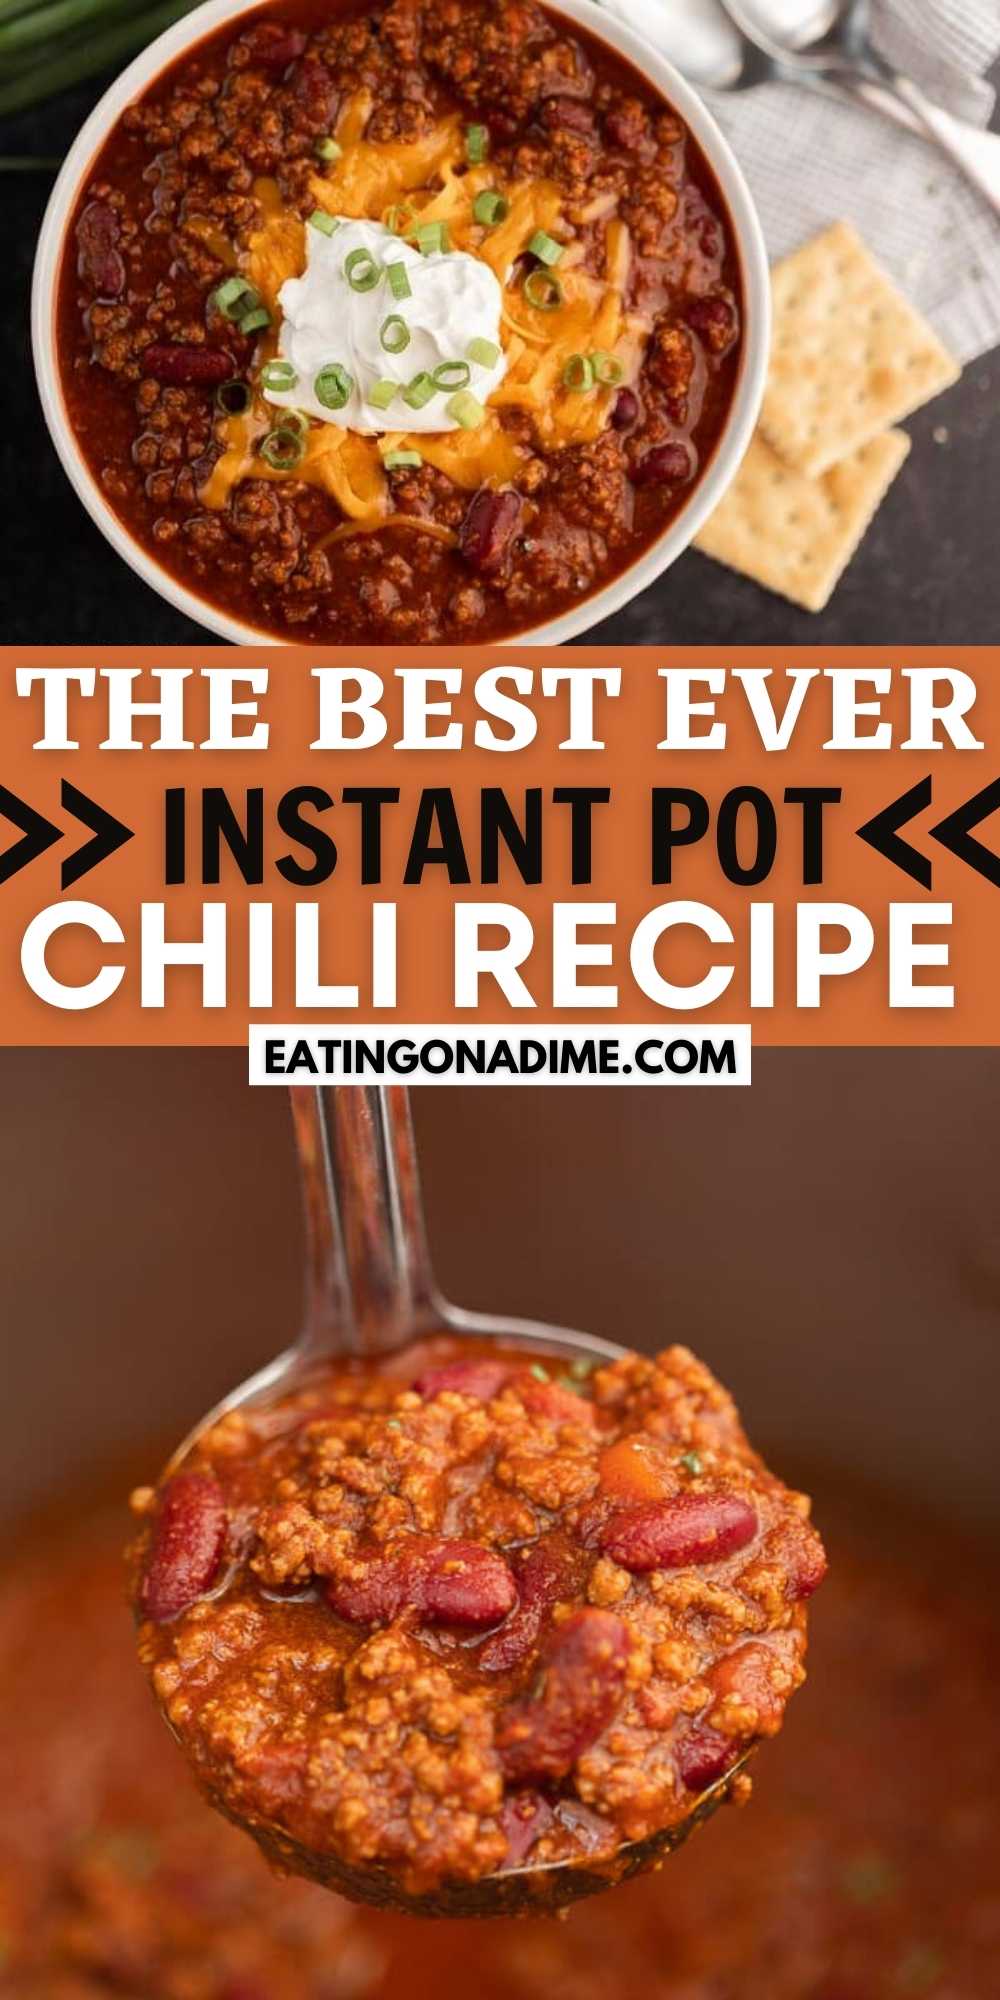 https://www.eatingonadime.com/wp-content/uploads/2021/10/Instant-Pot-Chili-Recipe-3.jpg